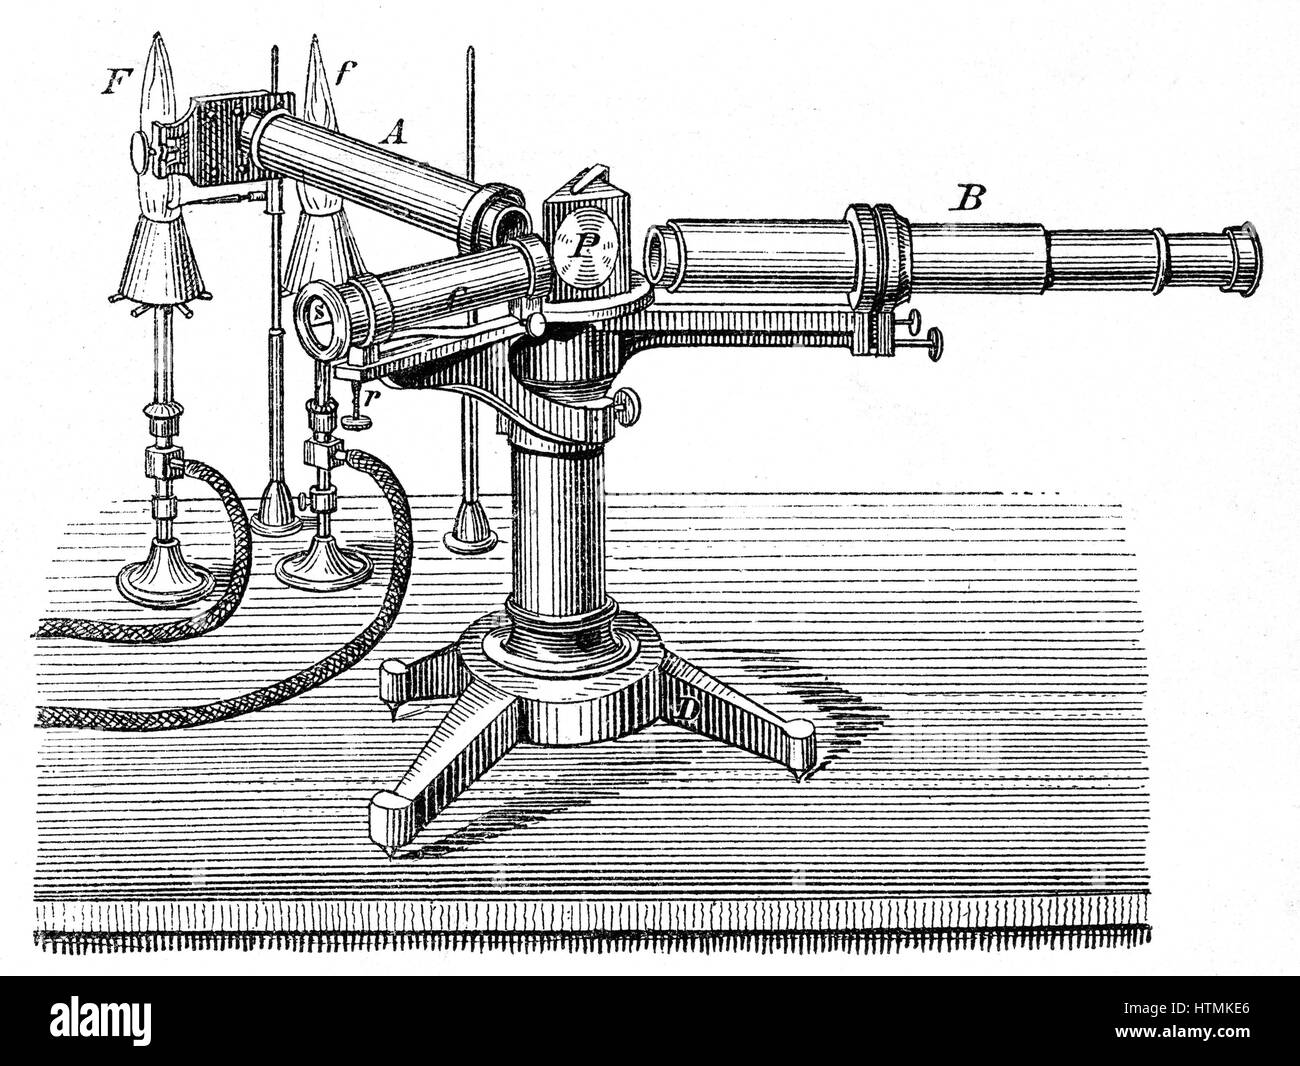 Spektroskopische Apparate anhand von Robert Wilhelm Bunsen (1811-1899) und Gustav Robert Kirchhoff (1824-1887) verwendet. Spektralanalyse (1859), die Entdeckung der Elemente, darunter Cäsium und Rubidium entdeckt. Gravur c1895 Stockfoto